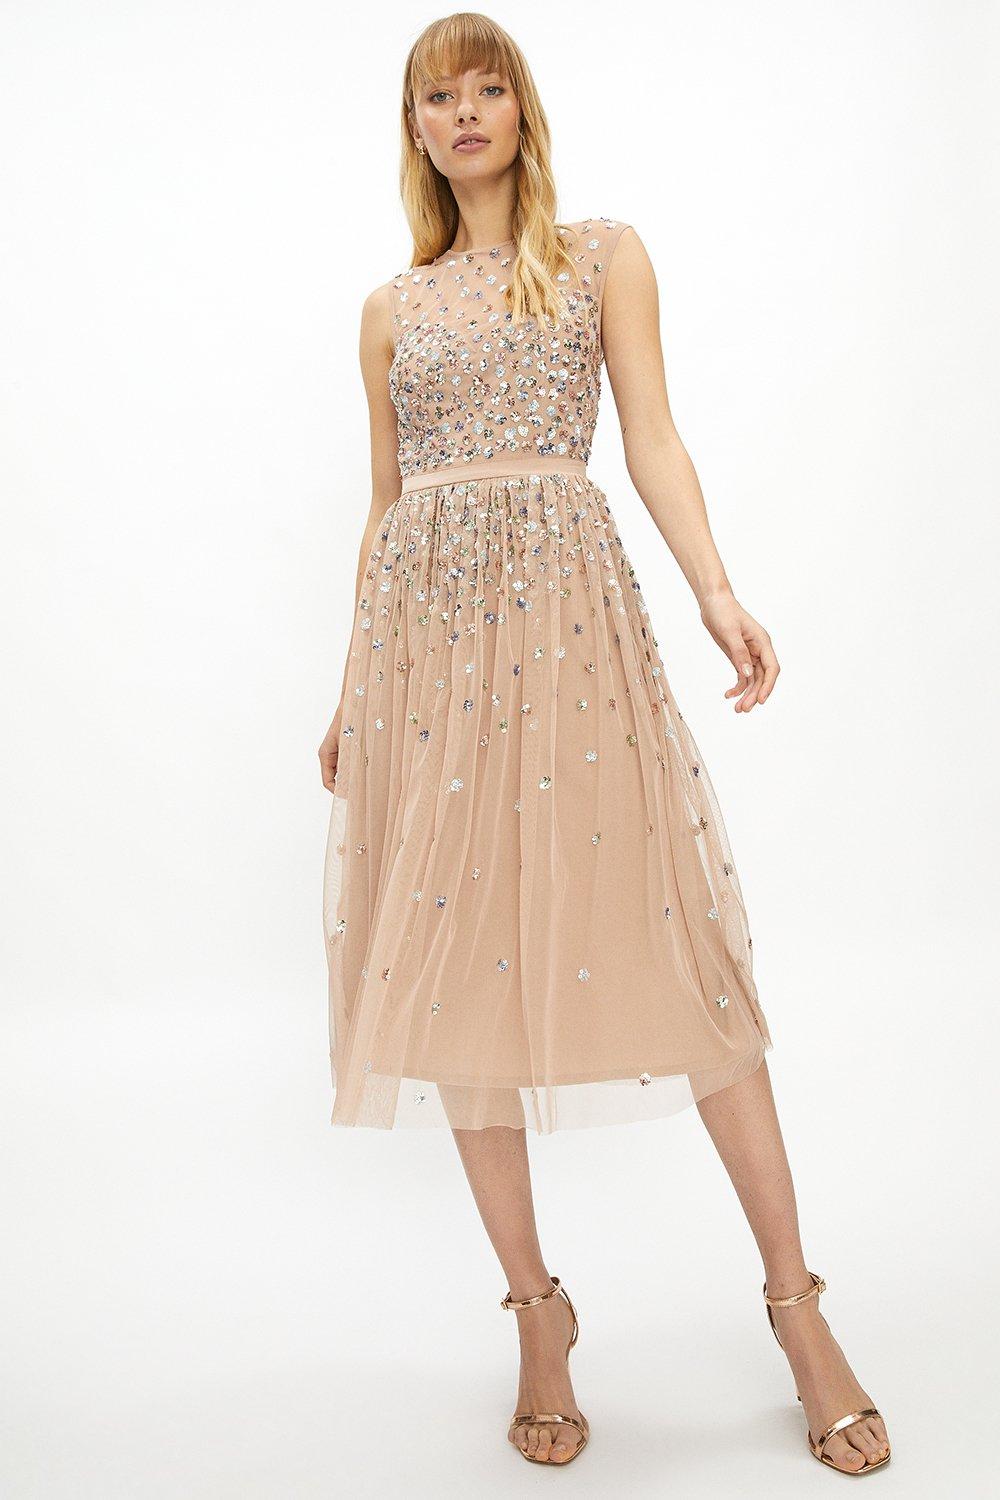 embellished dress